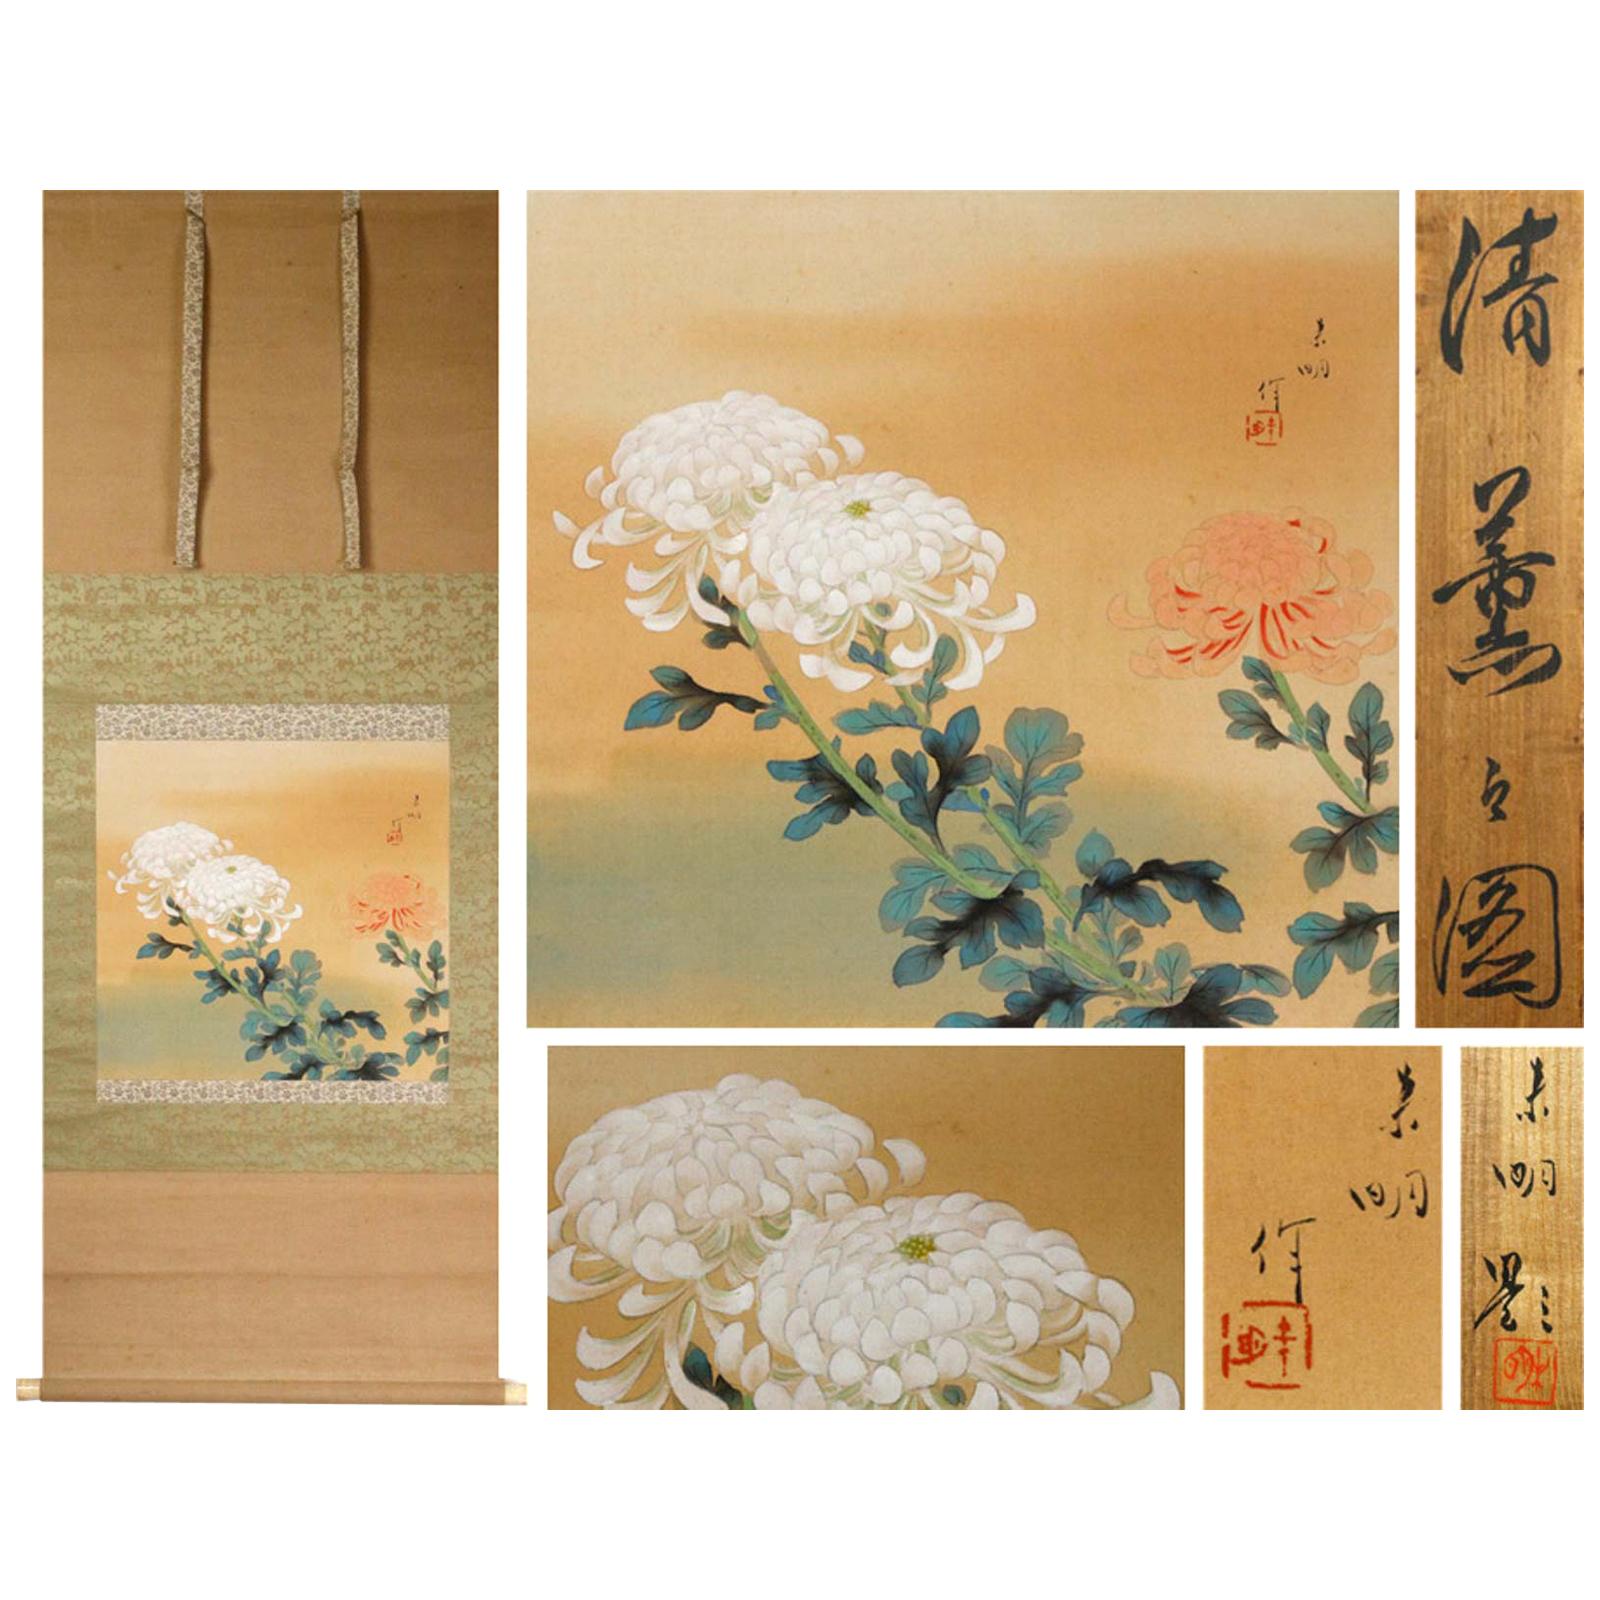 Jolie peinture japonaise, fleur de l'artiste Showa du 20e siècle